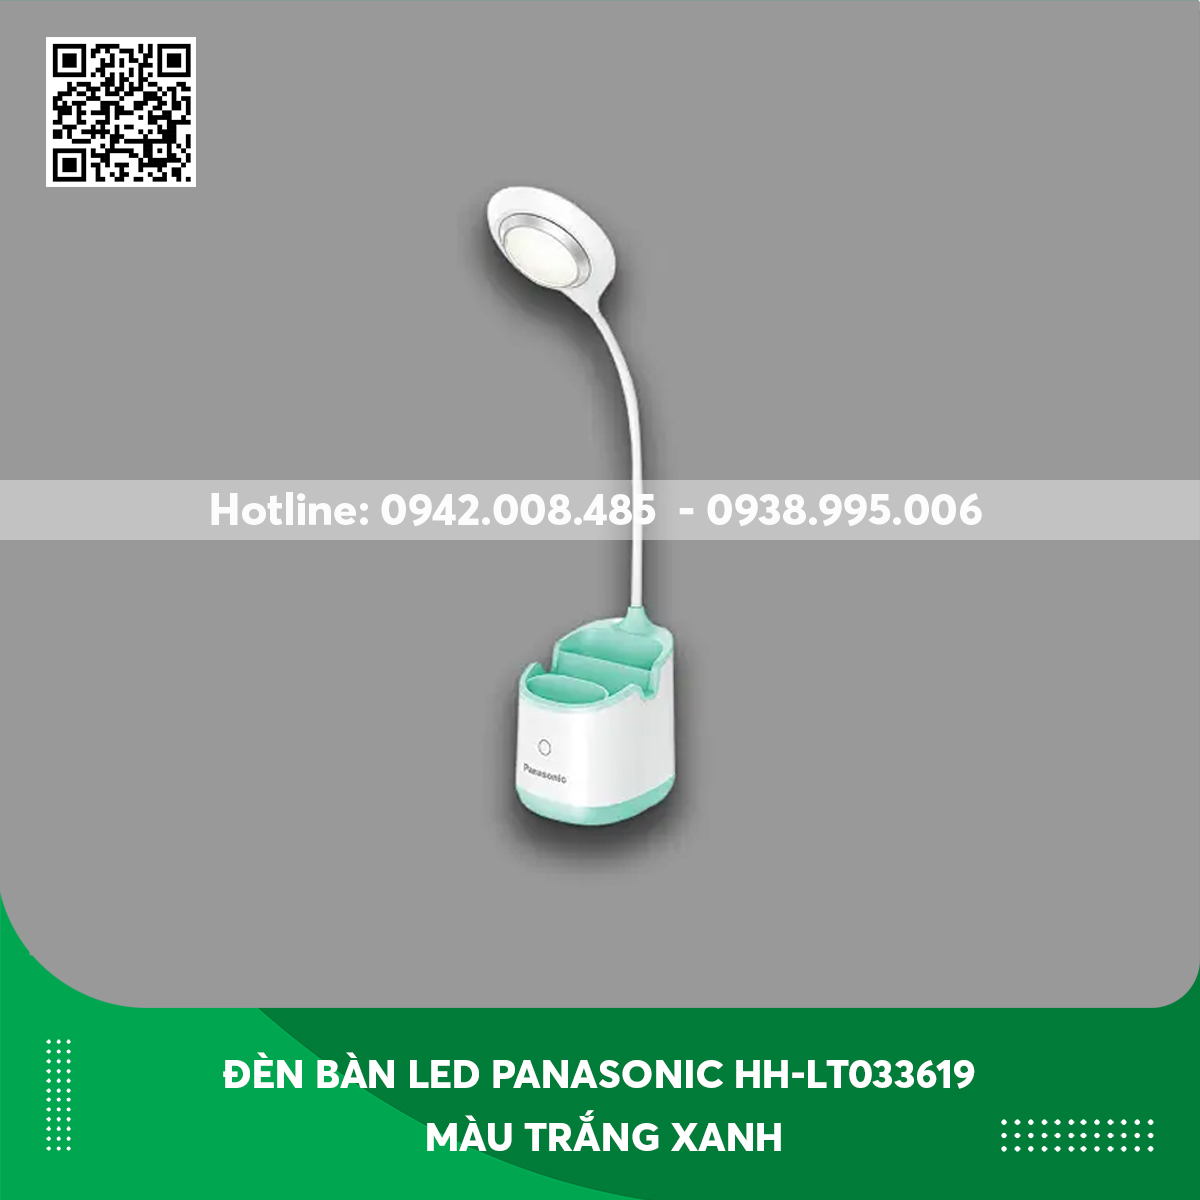 Đèn bàn LED Panasonic HH-LT033619 màu trắng xanh